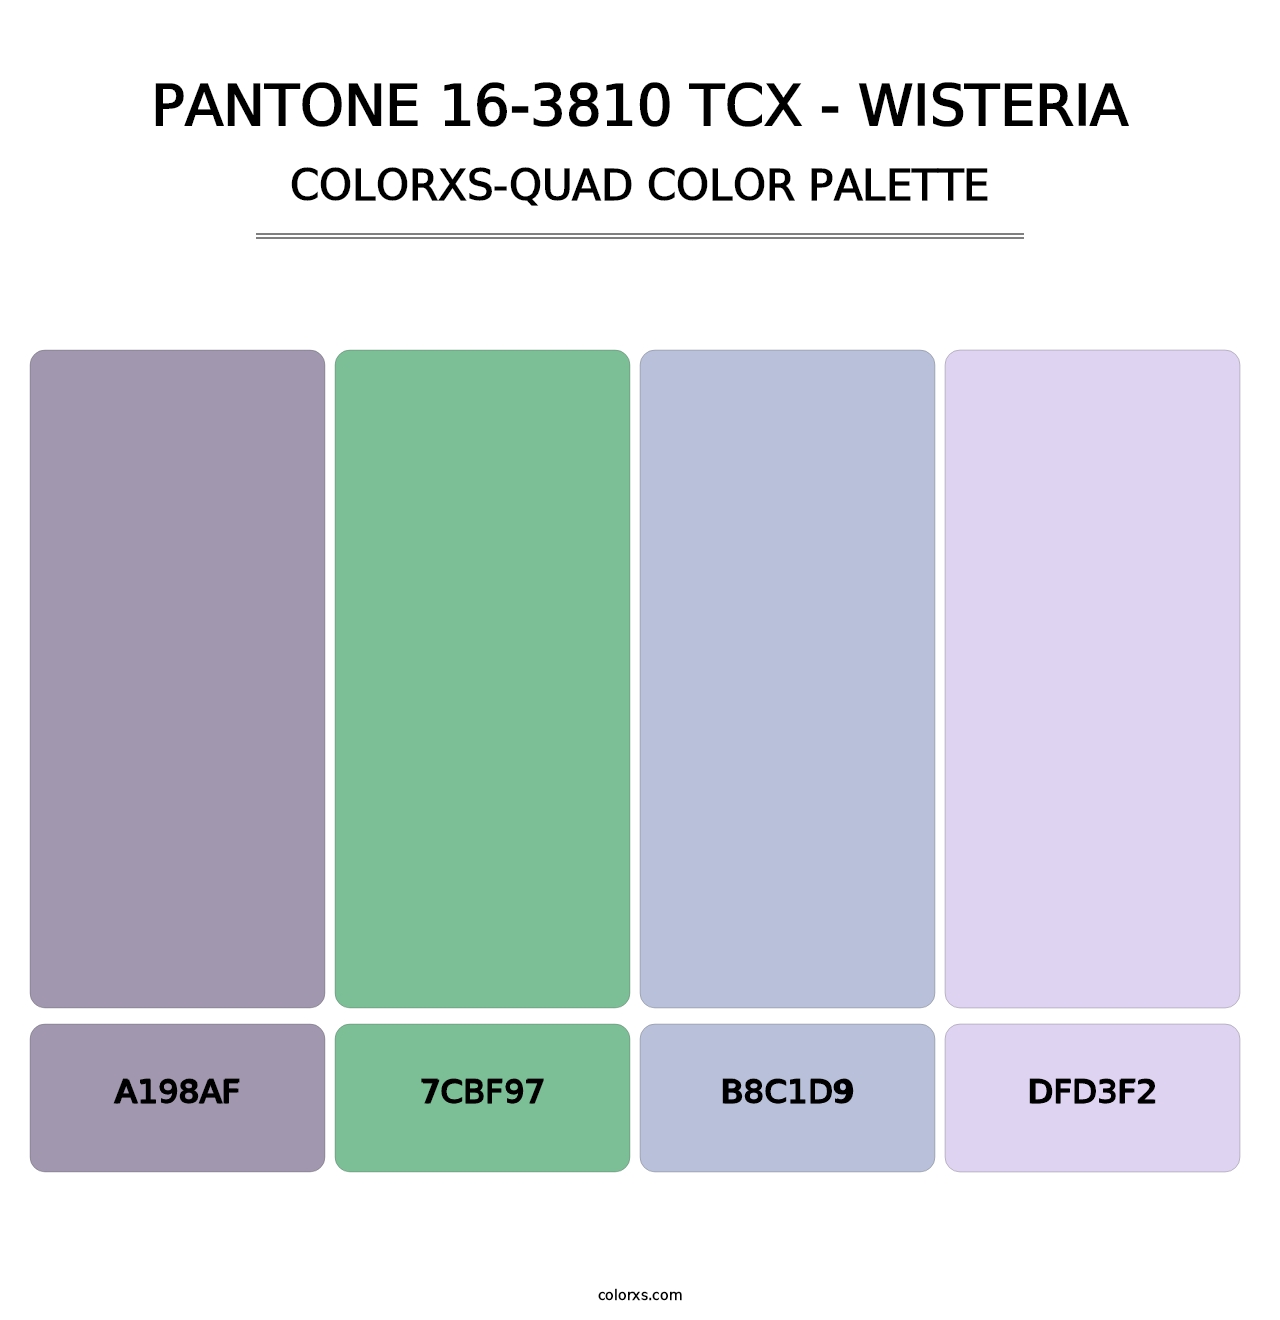 PANTONE 16-3810 TCX - Wisteria - Colorxs Quad Palette